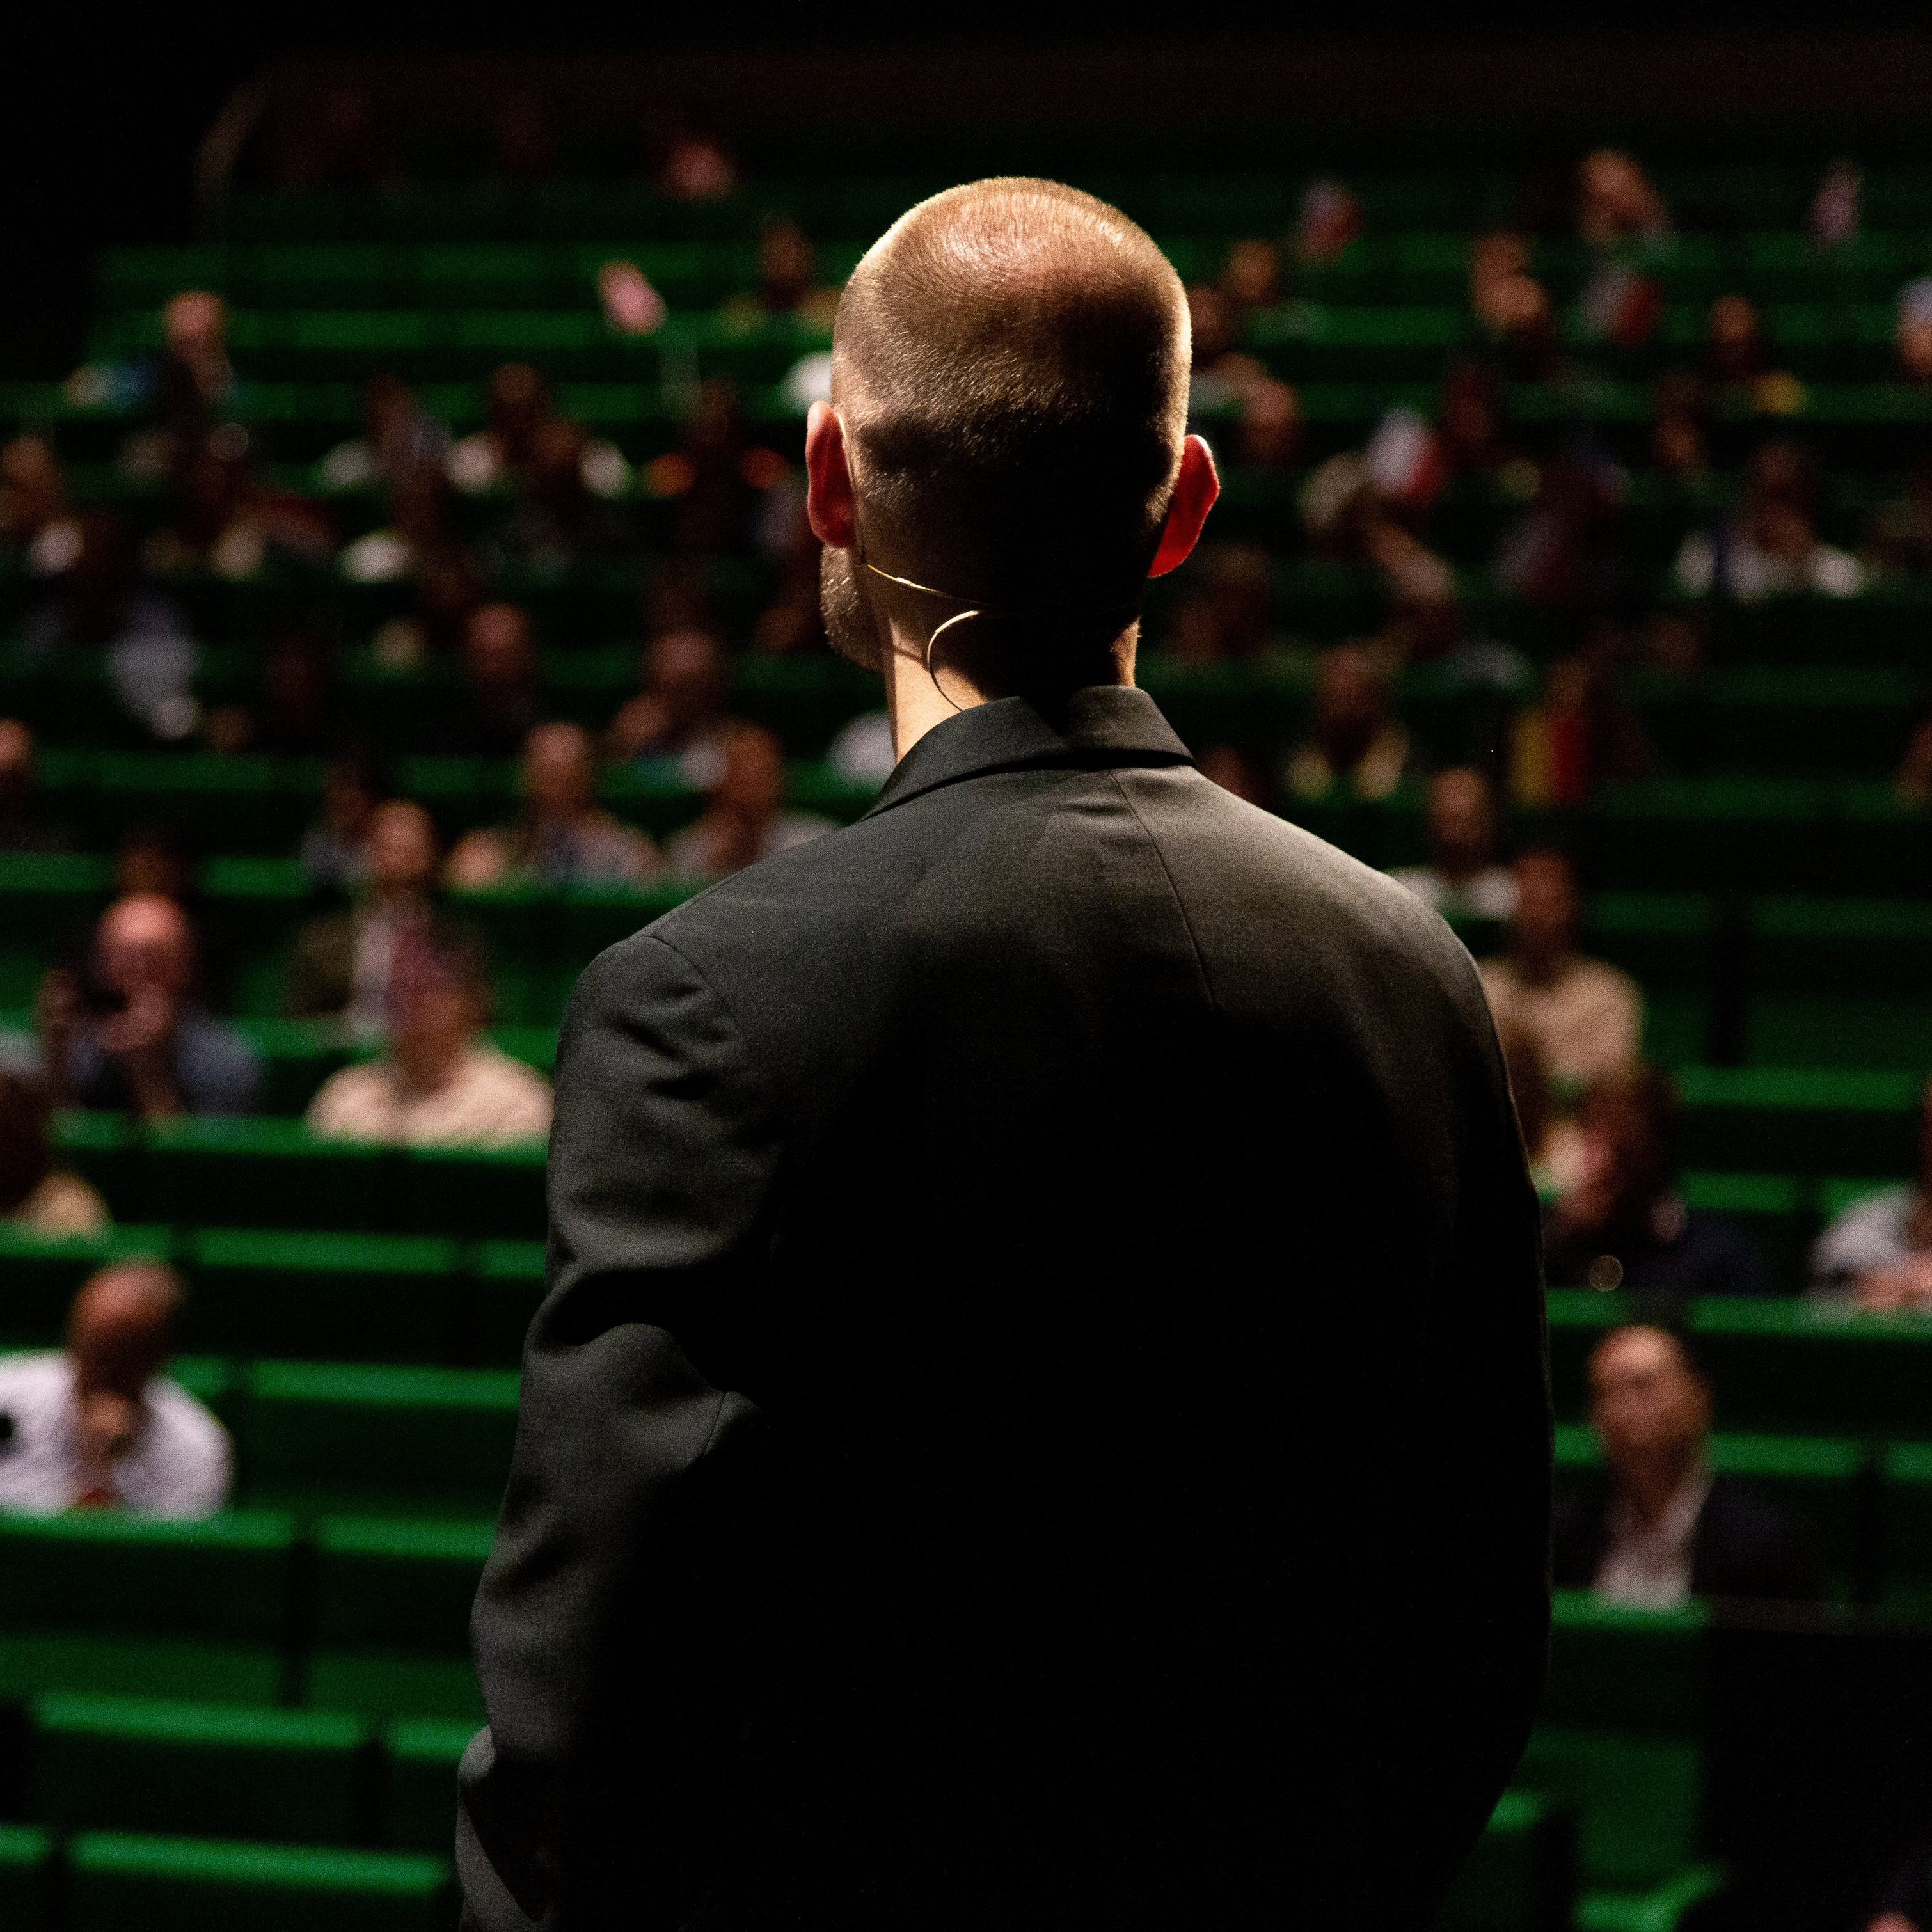 Mann in schwarzem Anzug, der einem Publikum in einem Auditorium mit grünen Sitzen gegenübersteht.